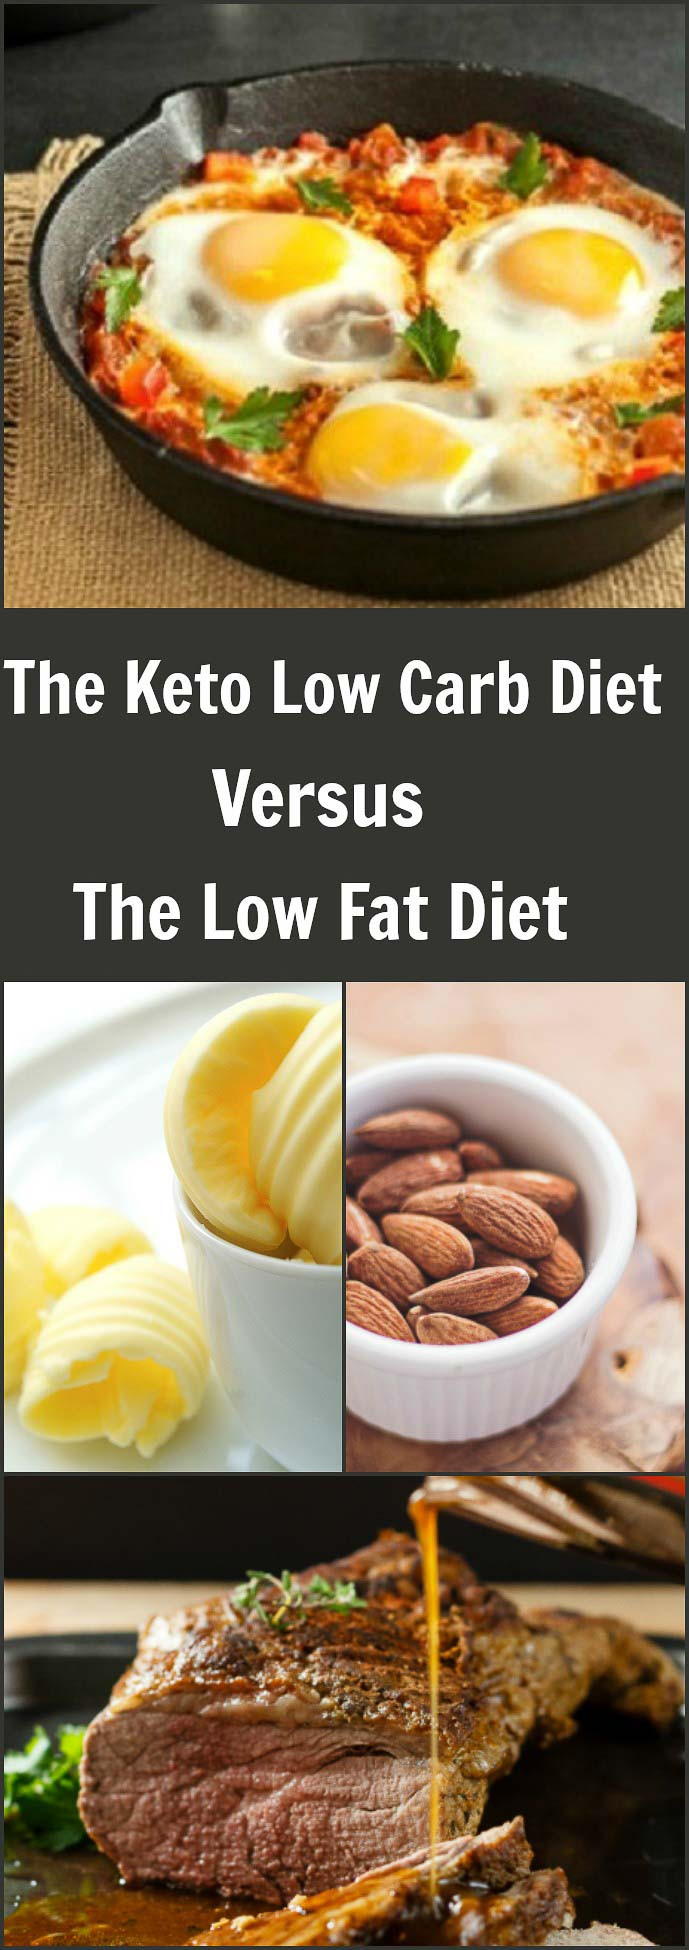 Low Fat Keto Diet
 Ketogenic Low Carb Diet Versus Low Fat Diet Plans